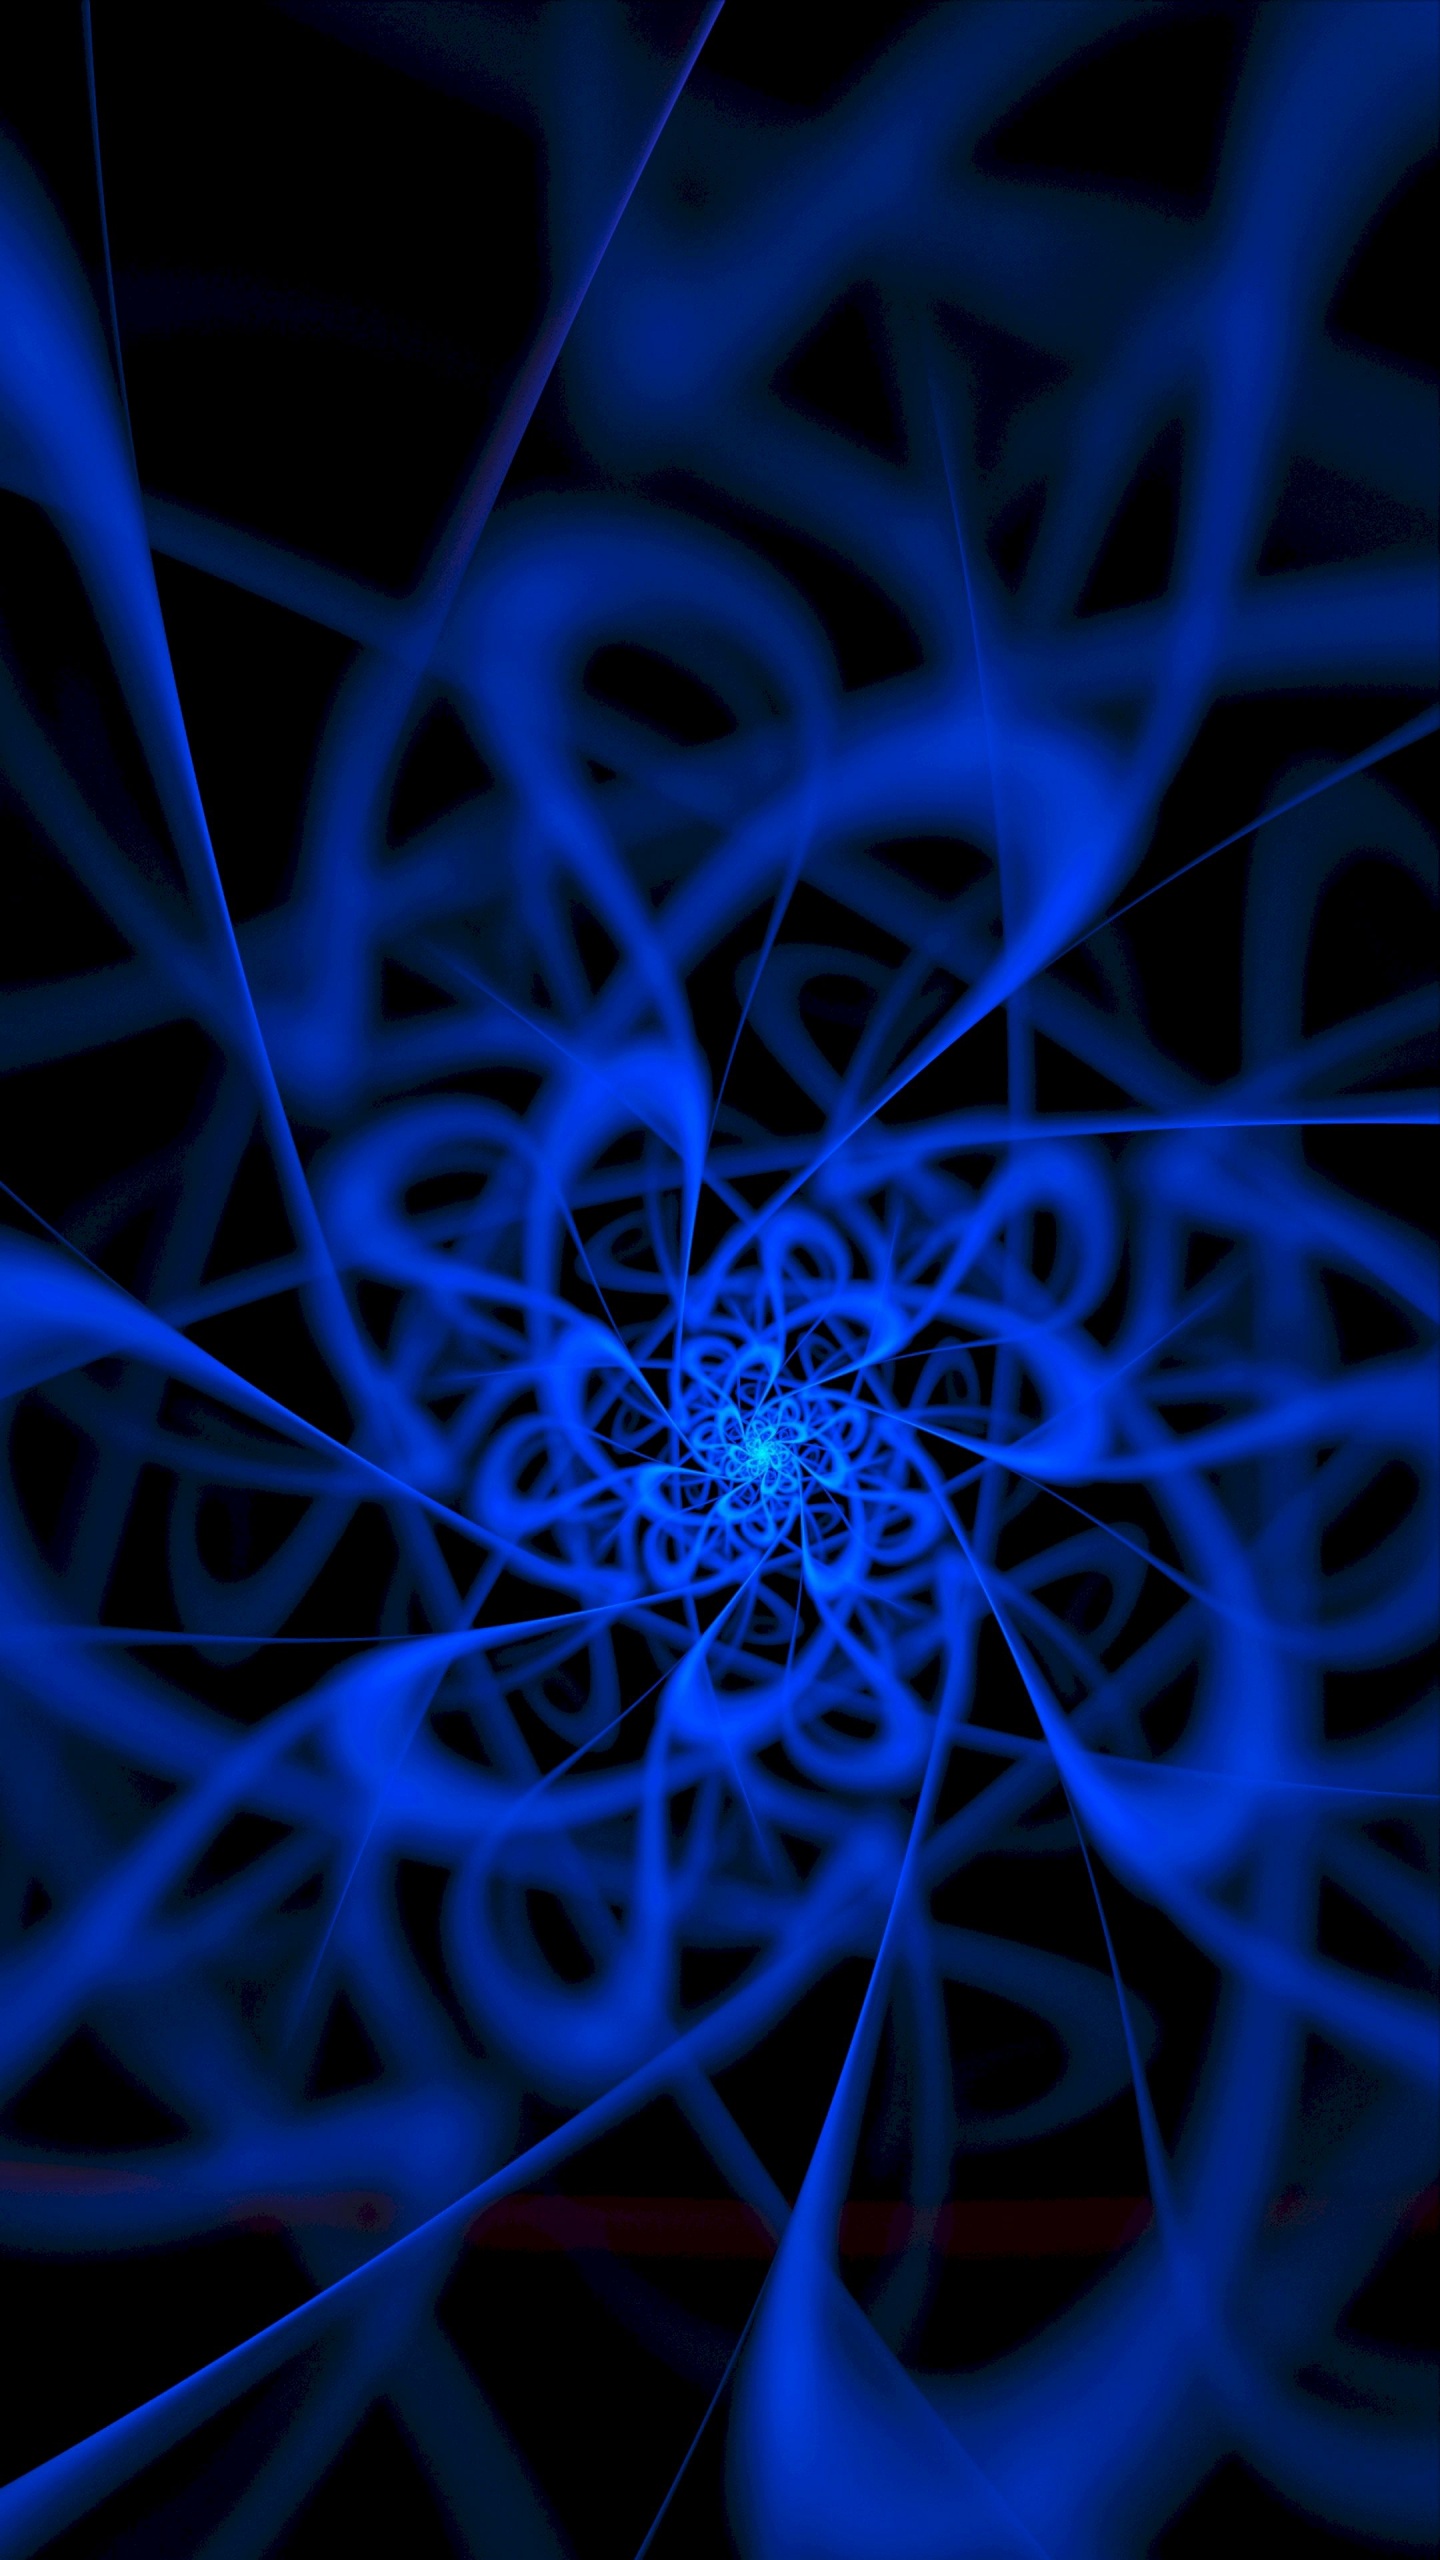 Blaue Und Weiße Spirale Abbildung. Wallpaper in 1440x2560 Resolution